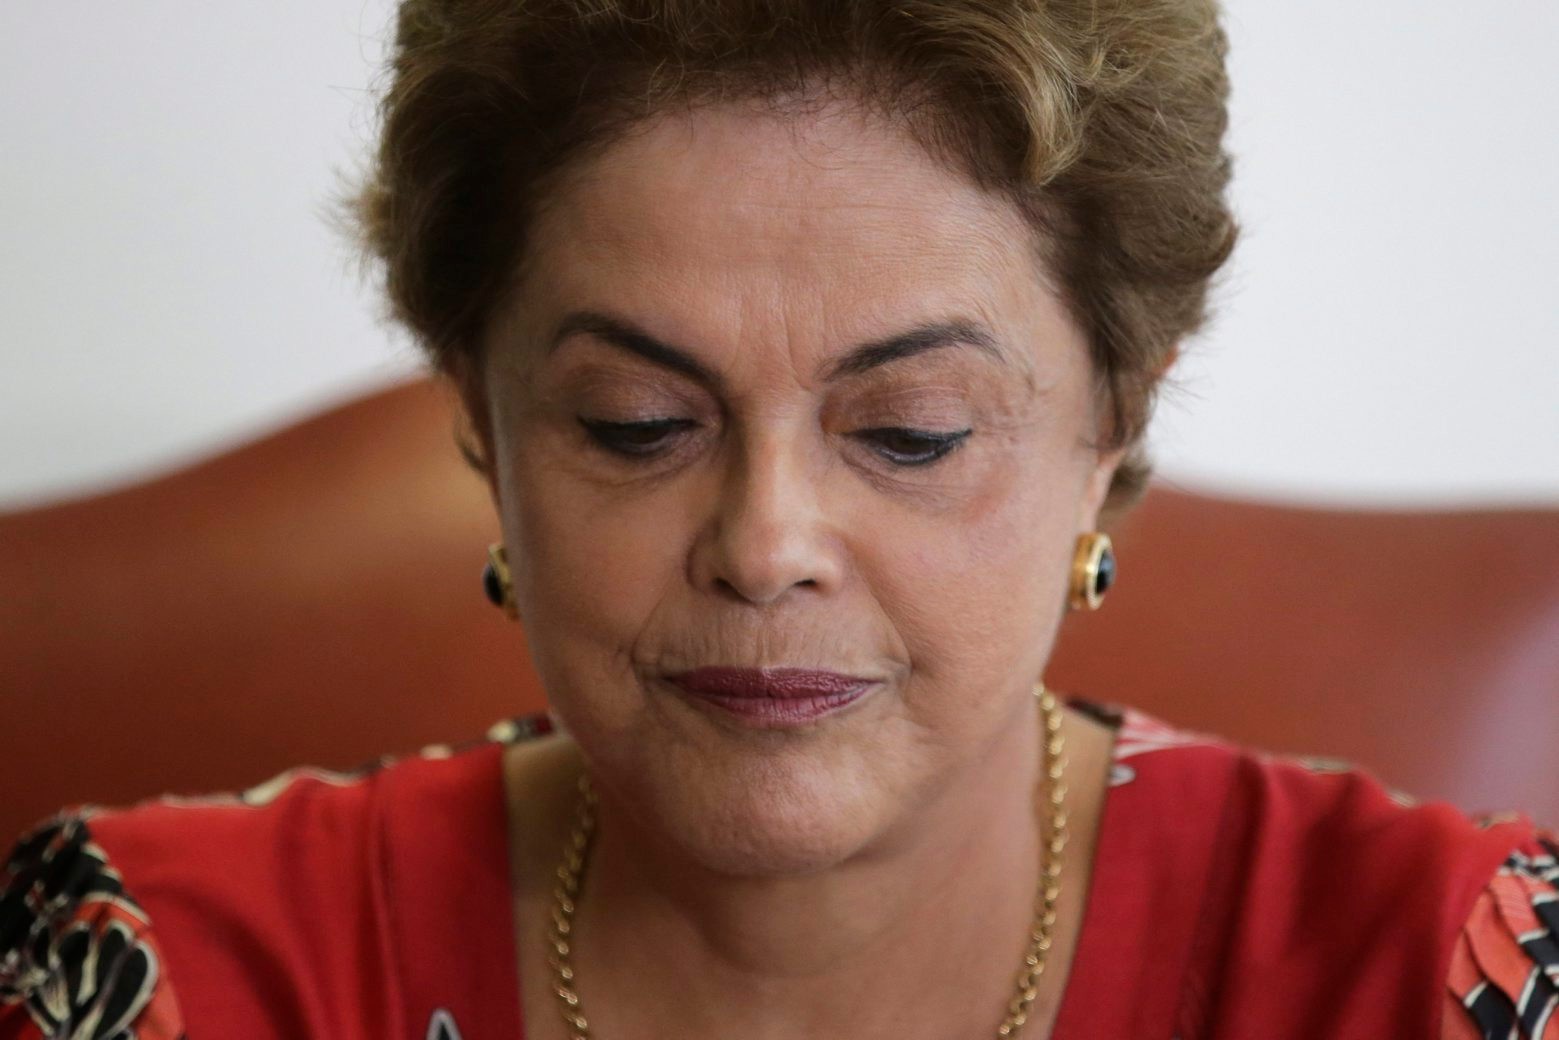 La présidente Dilma Rousseff est de plus en plus isolée à l’approche du vote des parlementaires sur sa destitution prévu à la mi-avril.